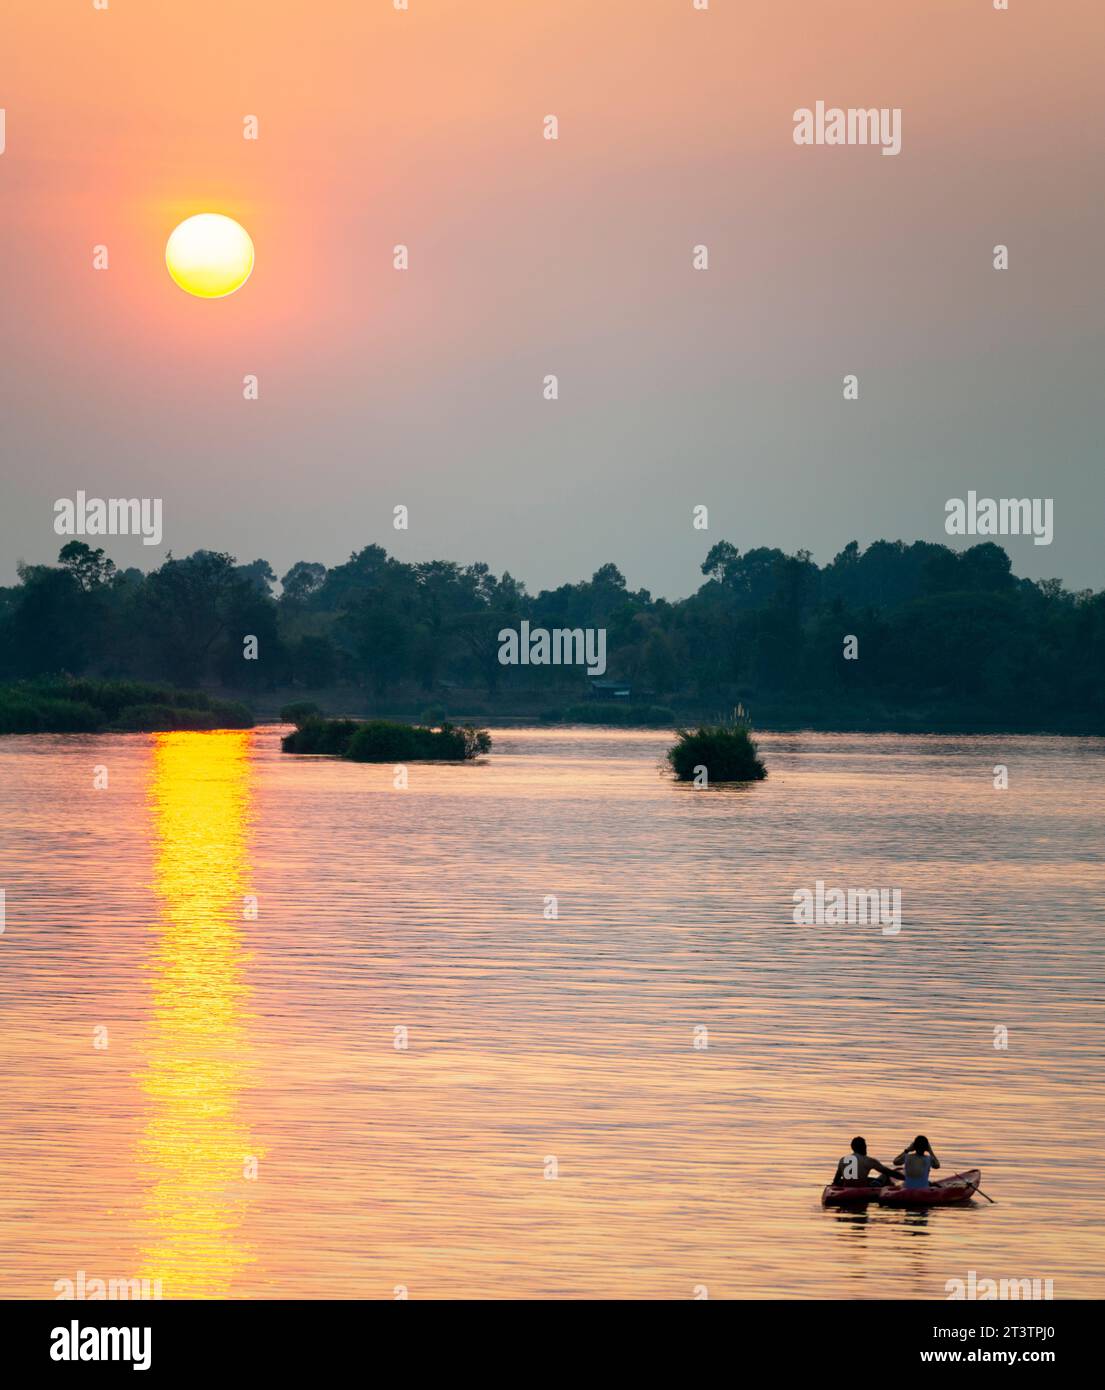 Sagome di due figure umane in kayak, che attraversano le calme e tranquille acque del Mekong, attraverso raggi di luce dorata riflessa sull'acqua, Foto Stock